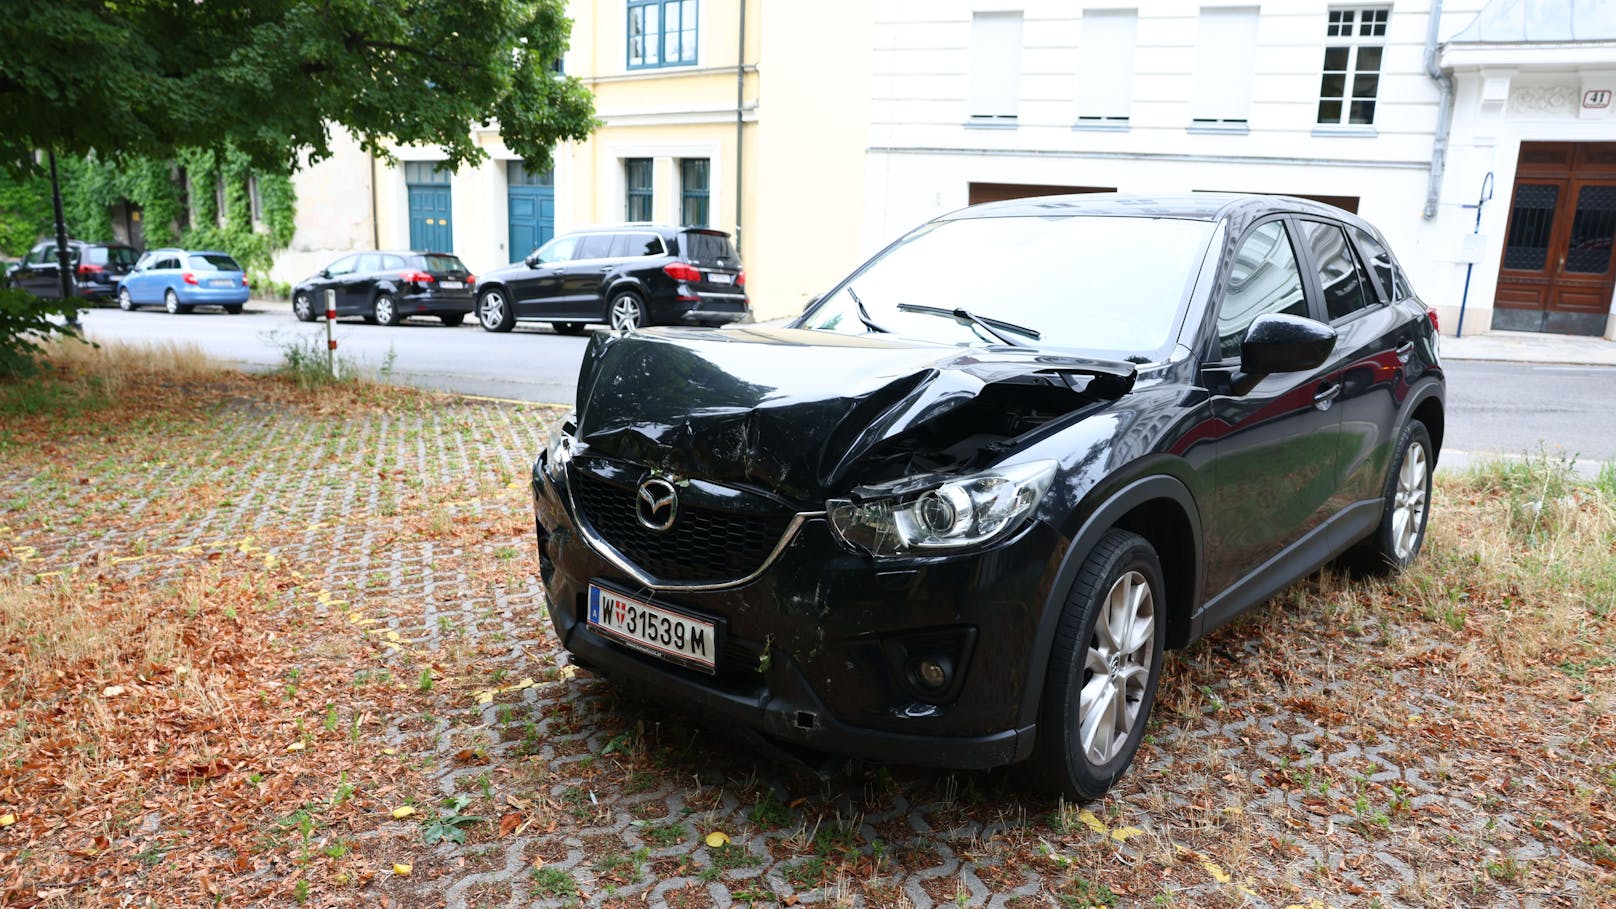 Der Mazda wurde in der Himmelstraße in Wien schwer beschädigt.